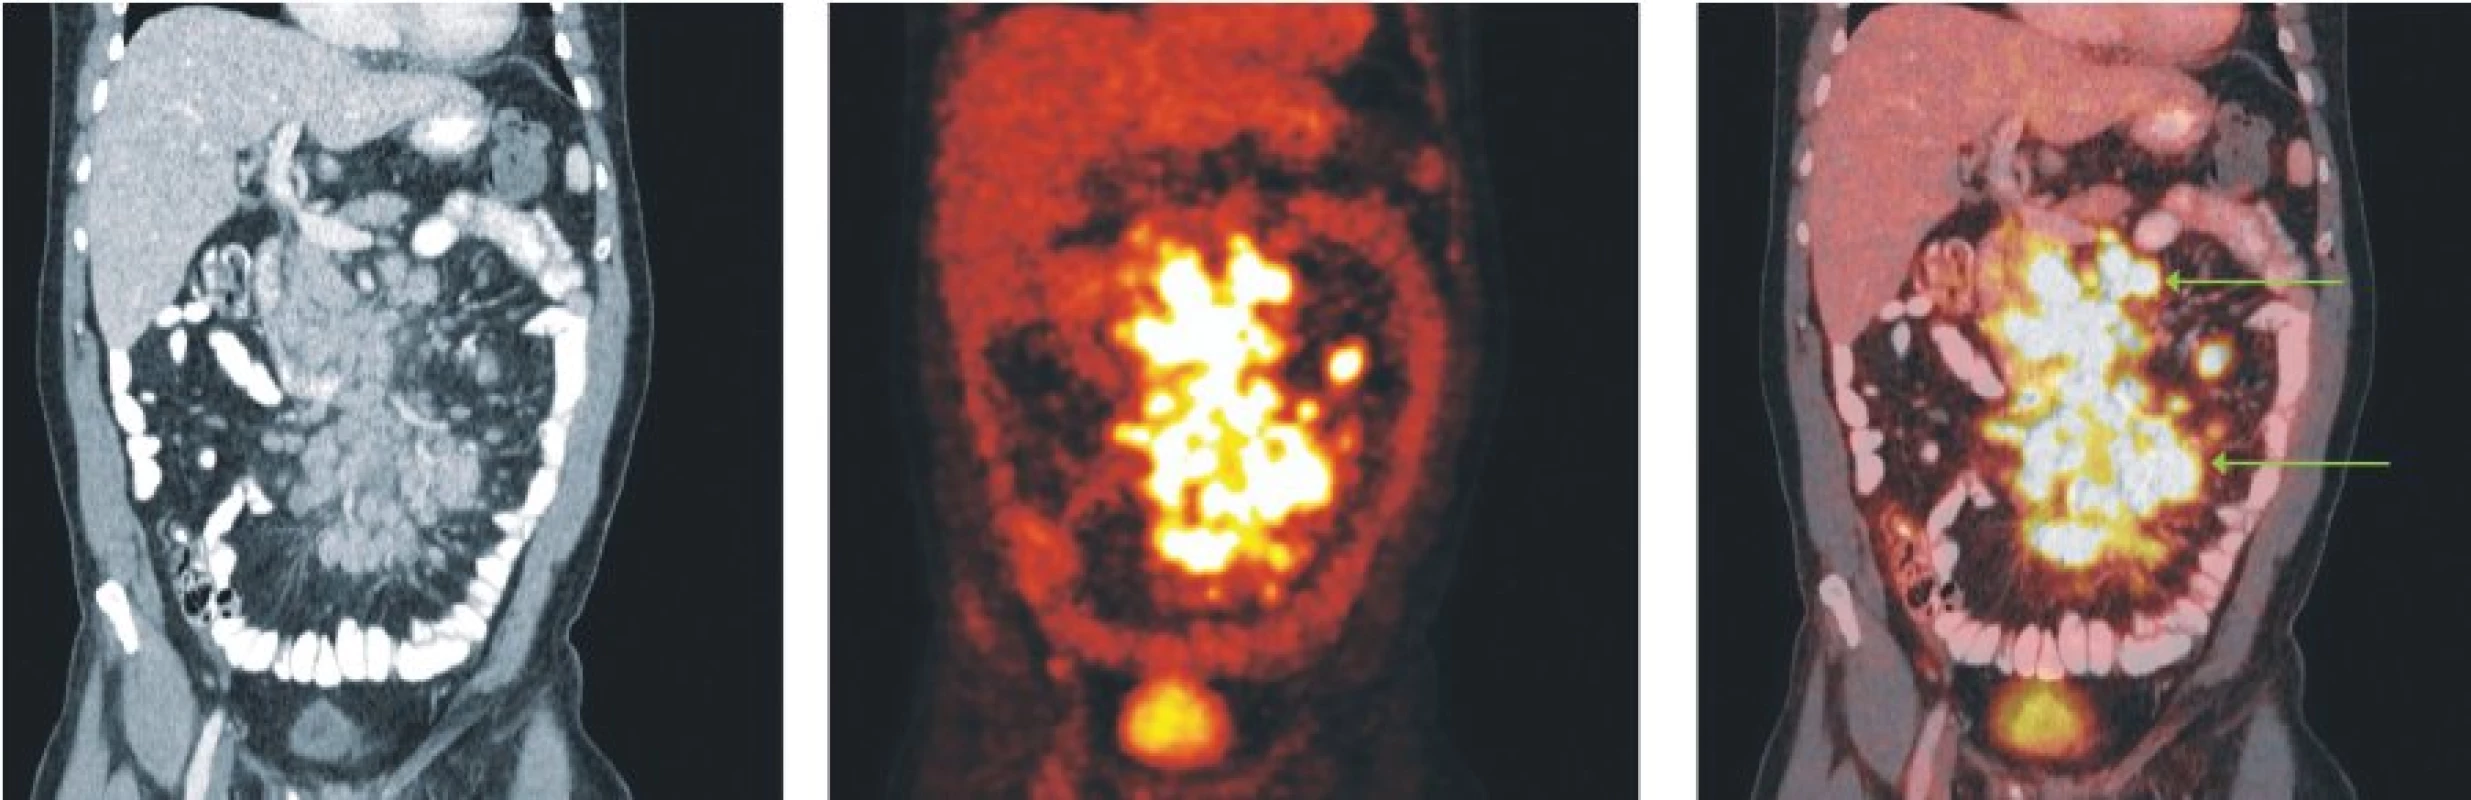 Snímky výpočetní tomografie (CT), pozitronové emisní tomografie (PET) a PET/CT u nemocného s difuzním B-velkobuněčným lymfomem. Mnohočetné zvětšené lymfatické uzliny v mezenteriu vykazují hypermetabolismus glukózy.